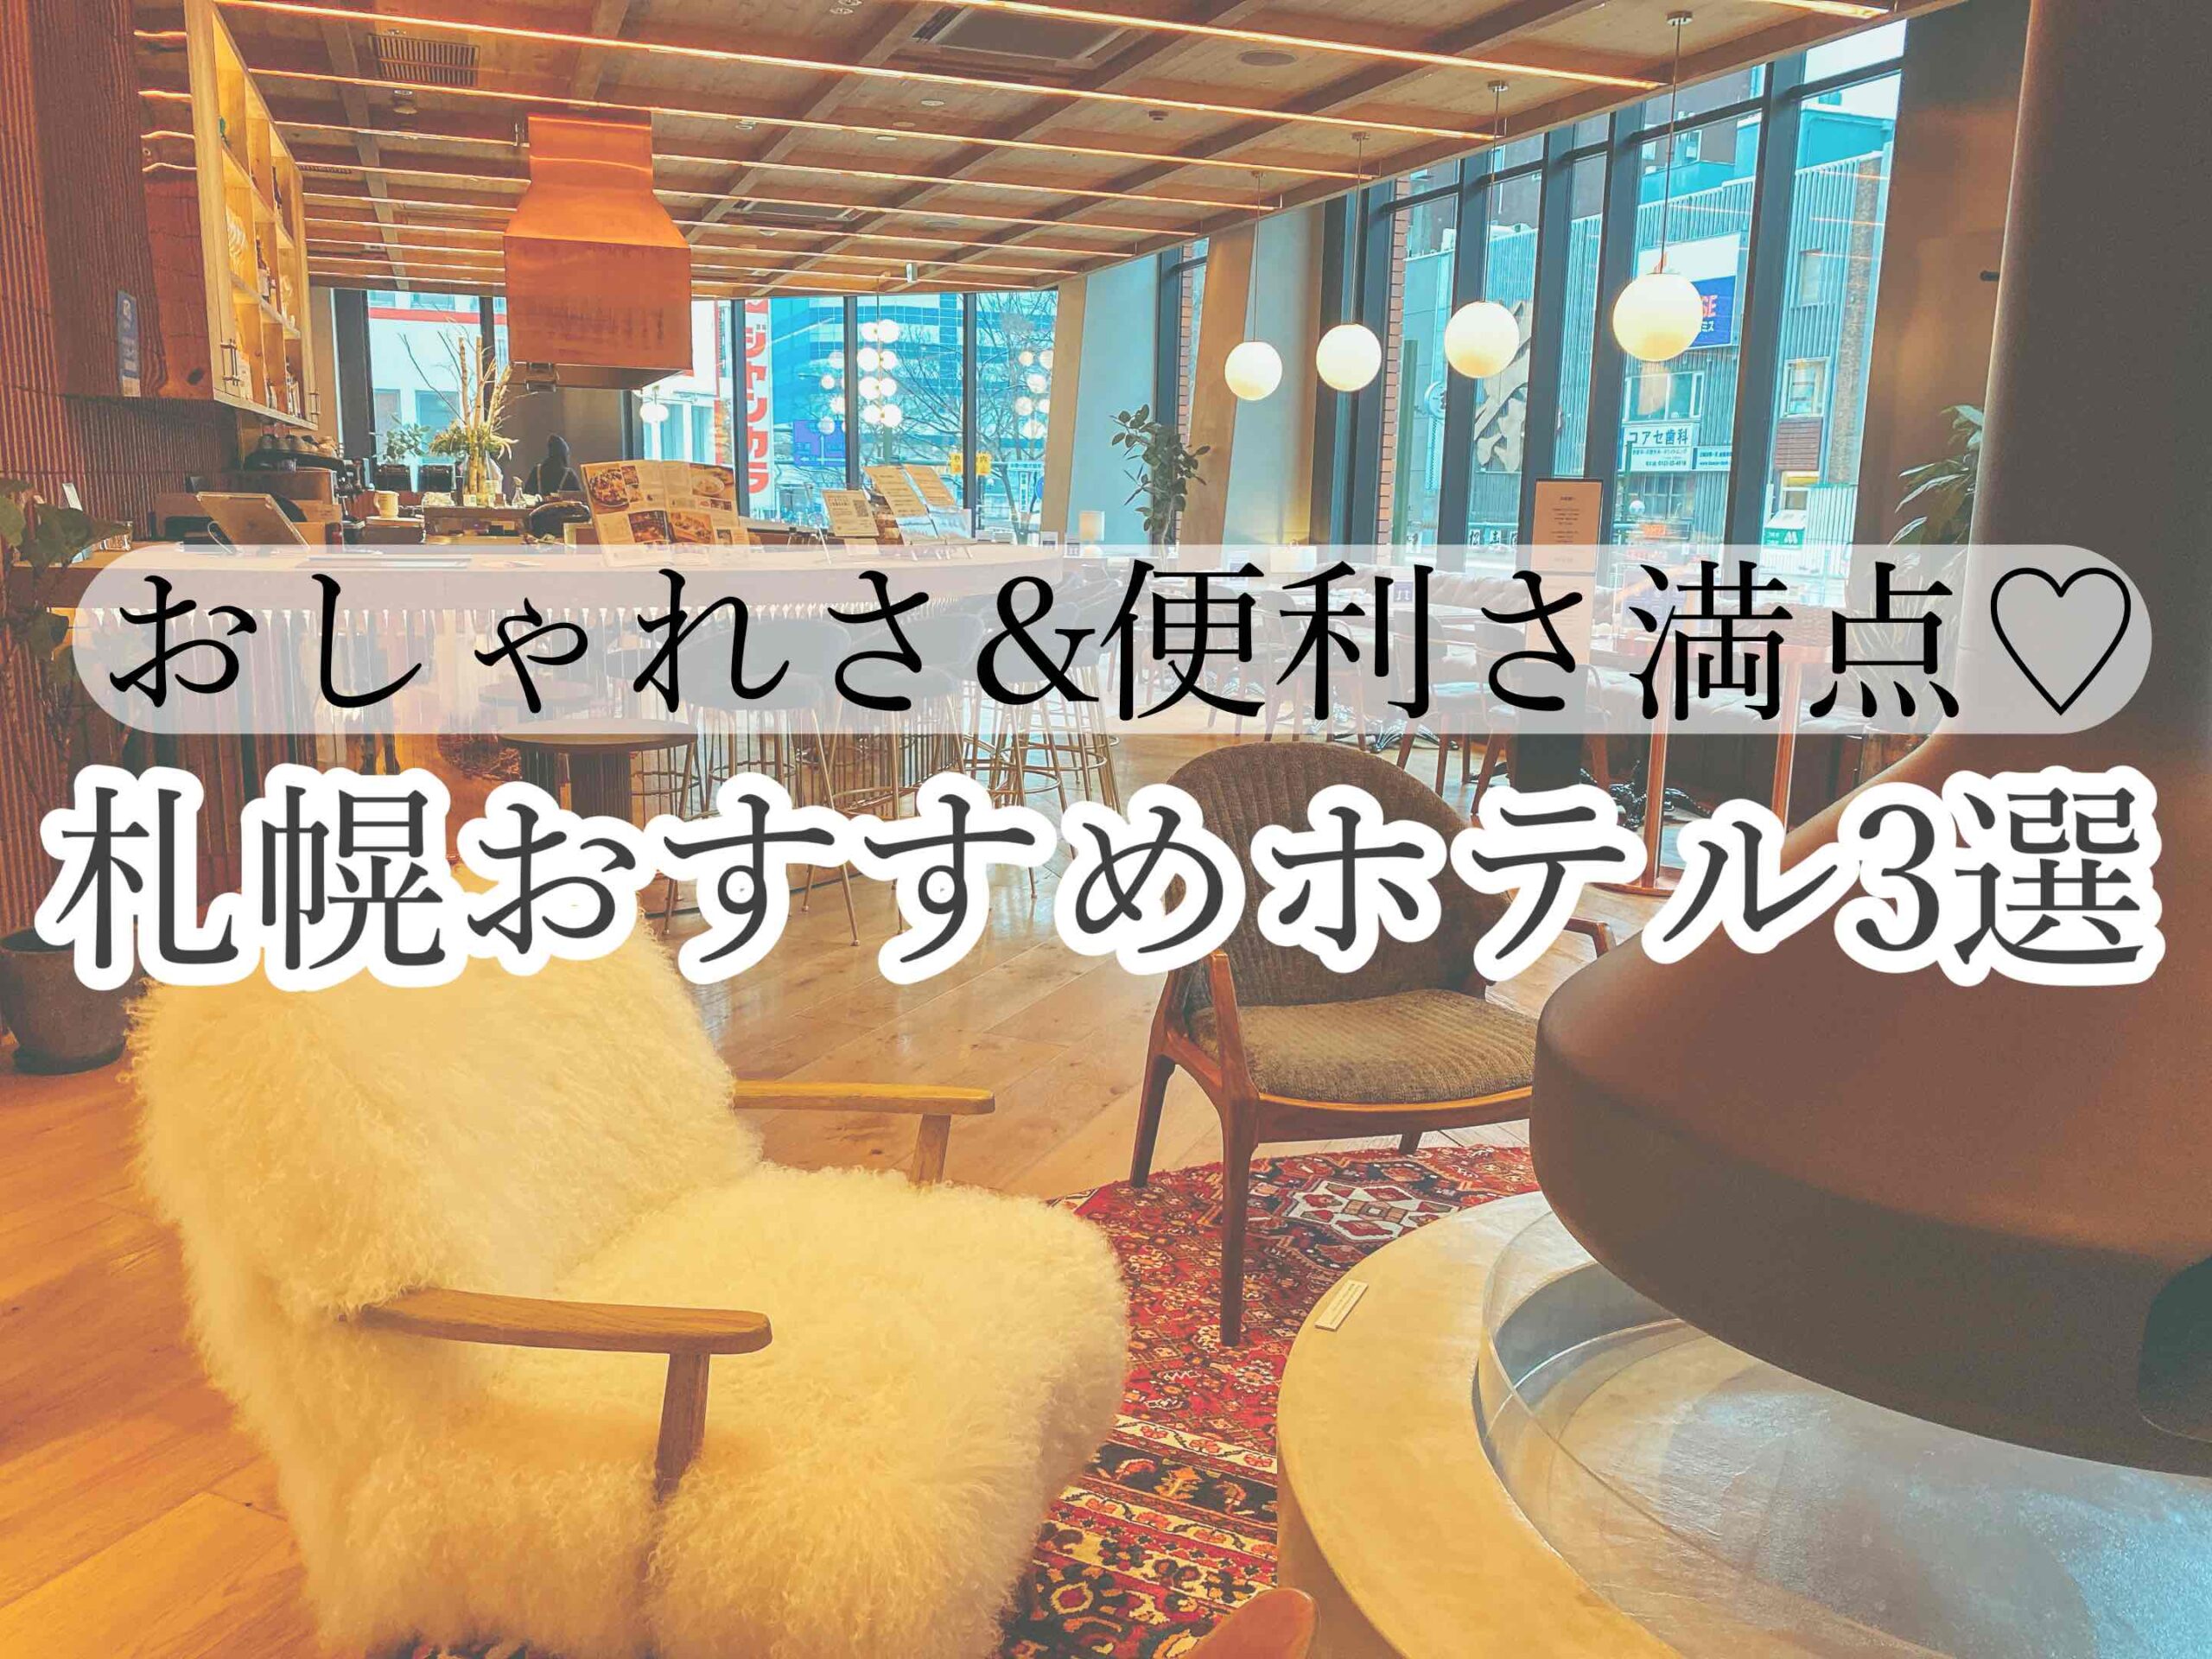 札幌在住のホテル好きがおすすめする お洒落さ 便利さ満点のホテル3選 ひとり女子旅案内